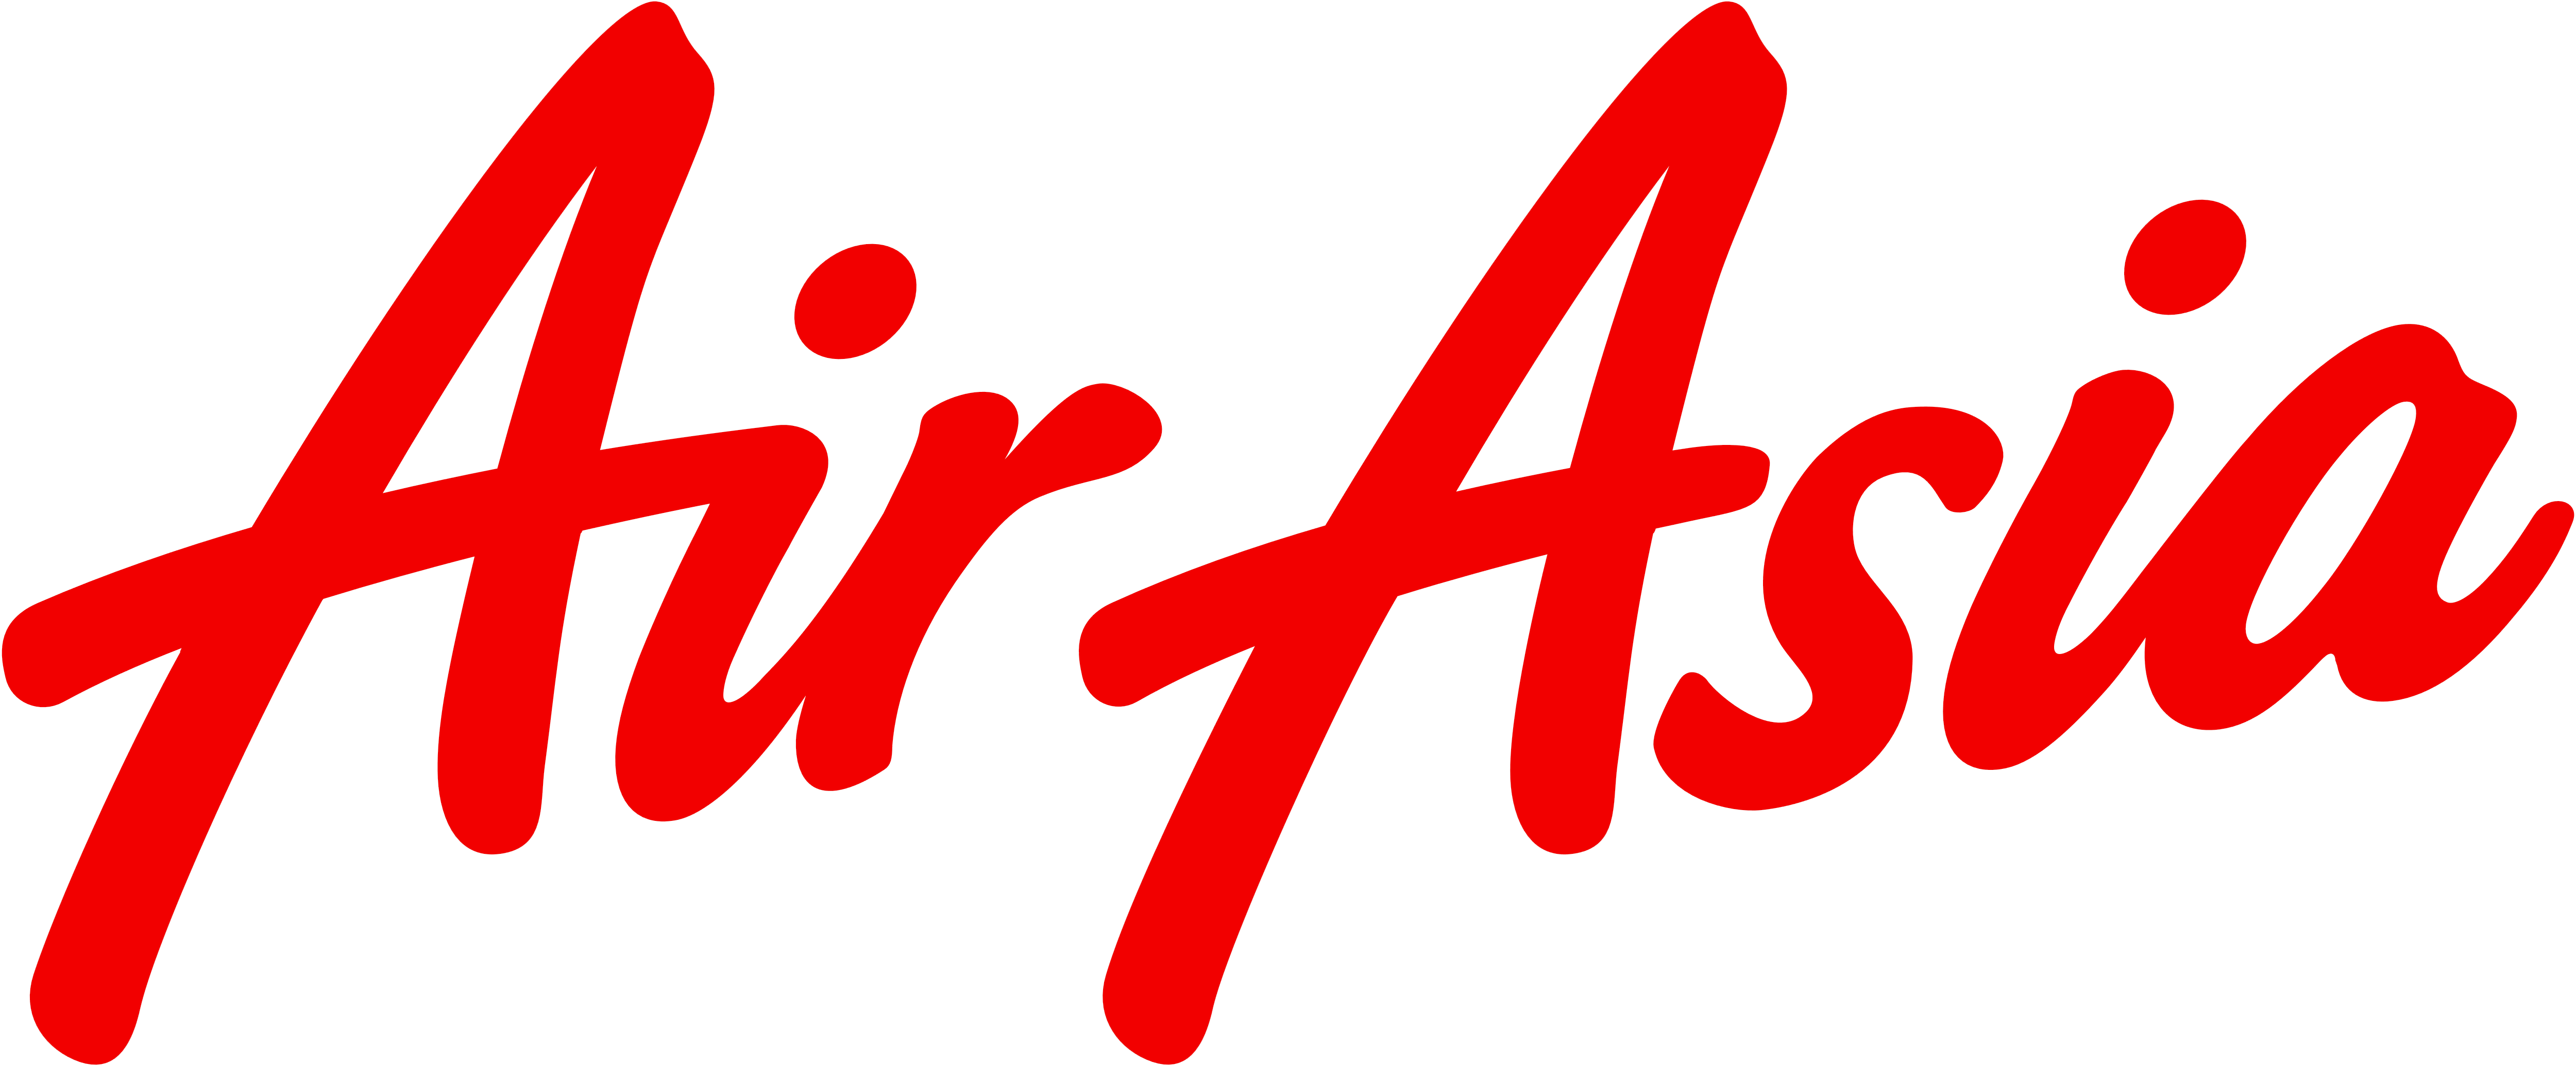 AirAsia_logo_text